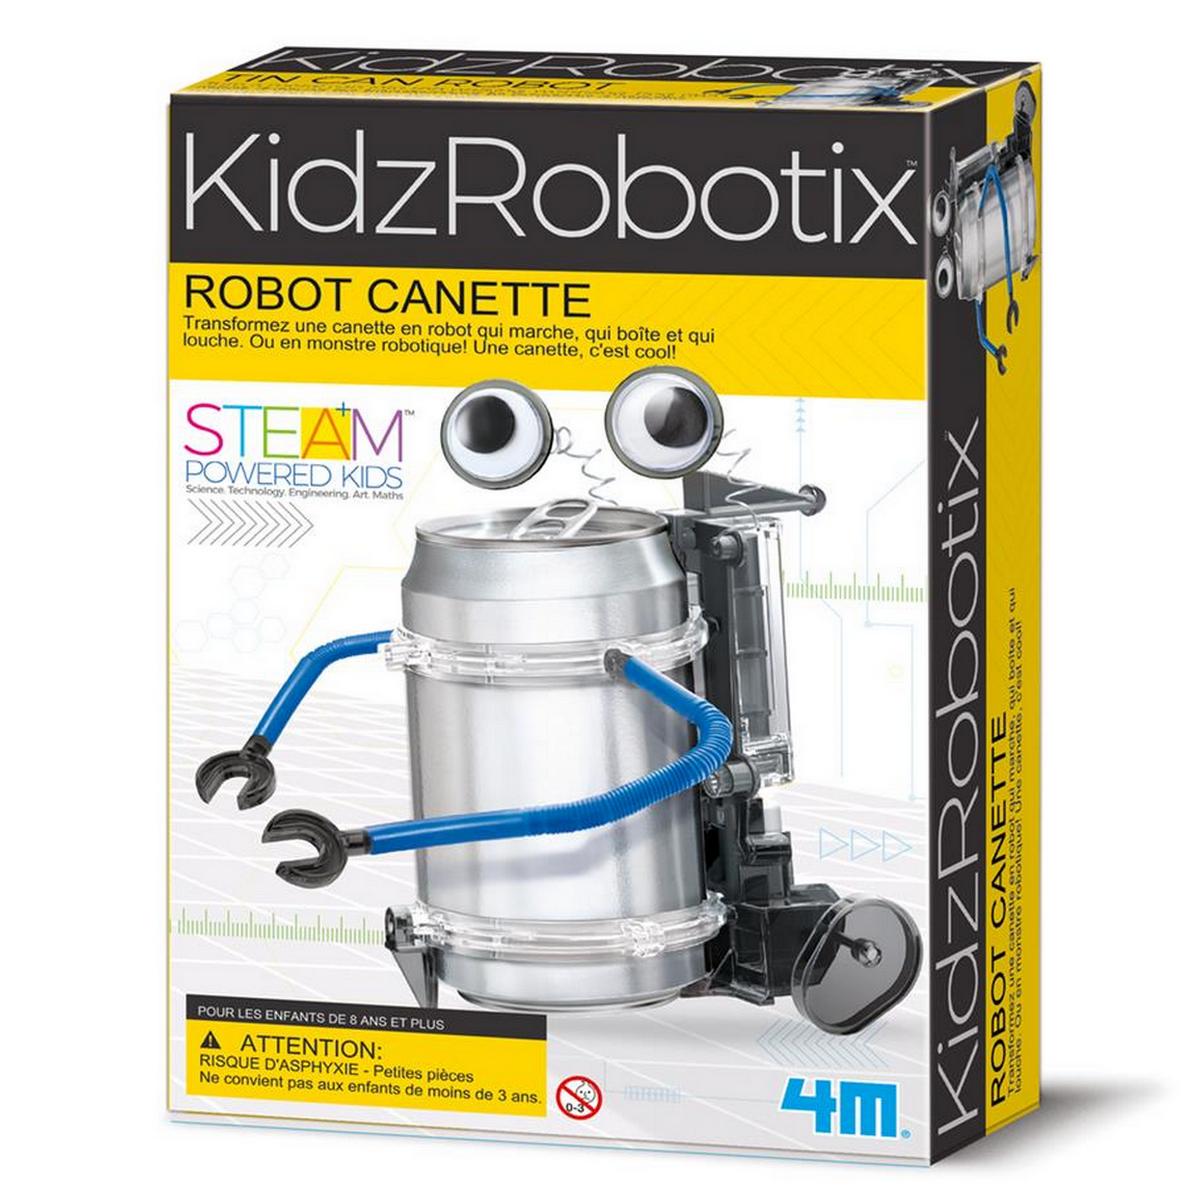 4M kidsrobotix robot canette une idee cadeau chez ugo et lea (3)